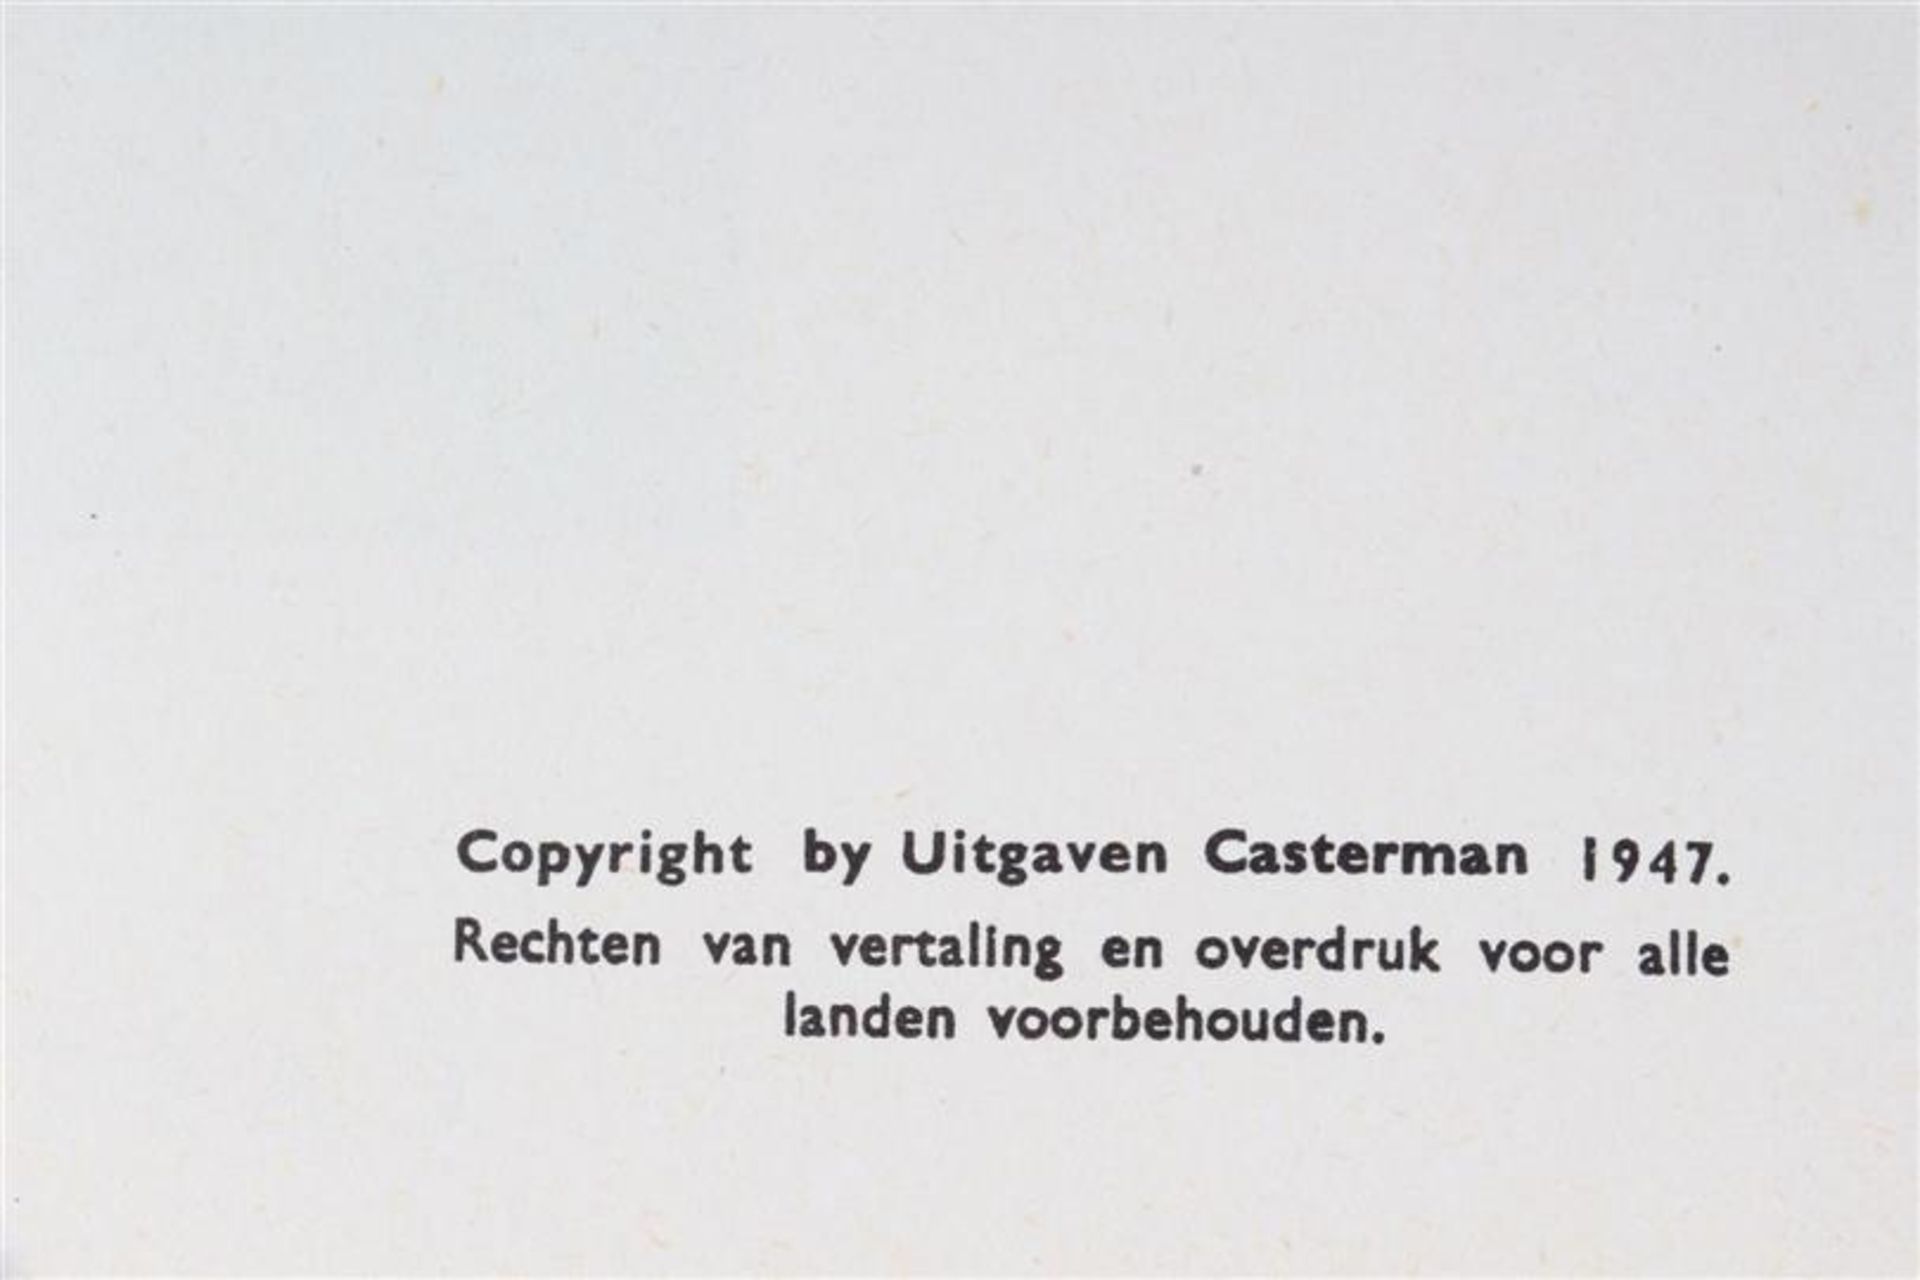 De avonturen van Kuifje, Hergé, uitgeverij Casterman, 7 hardcovers en drie softcovers. - Bild 4 aus 17